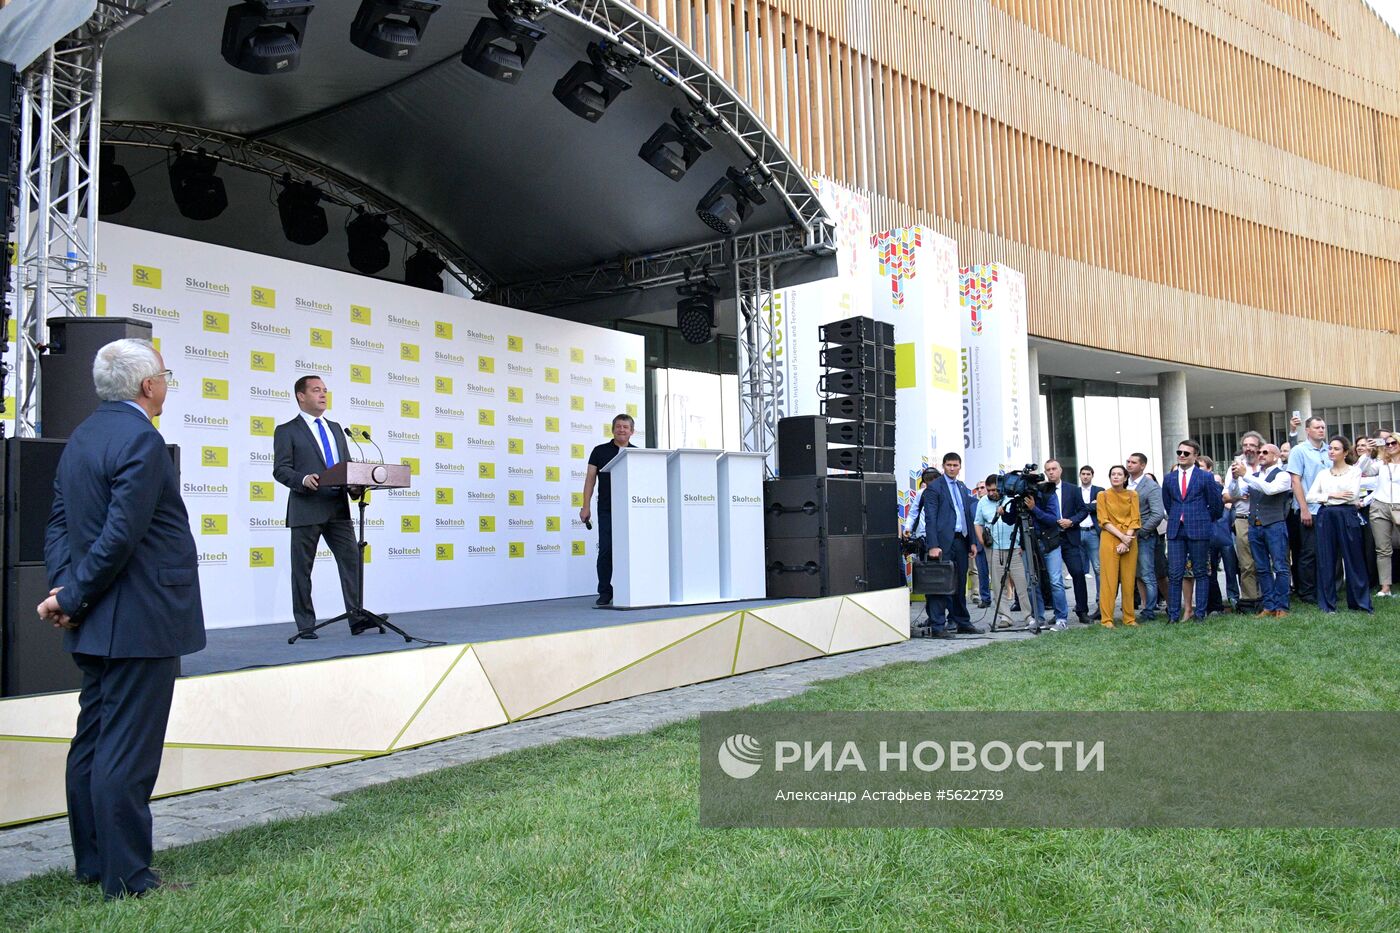 Премьер-министр РФ Д. Медведев посетил Технопарк "Сколково"